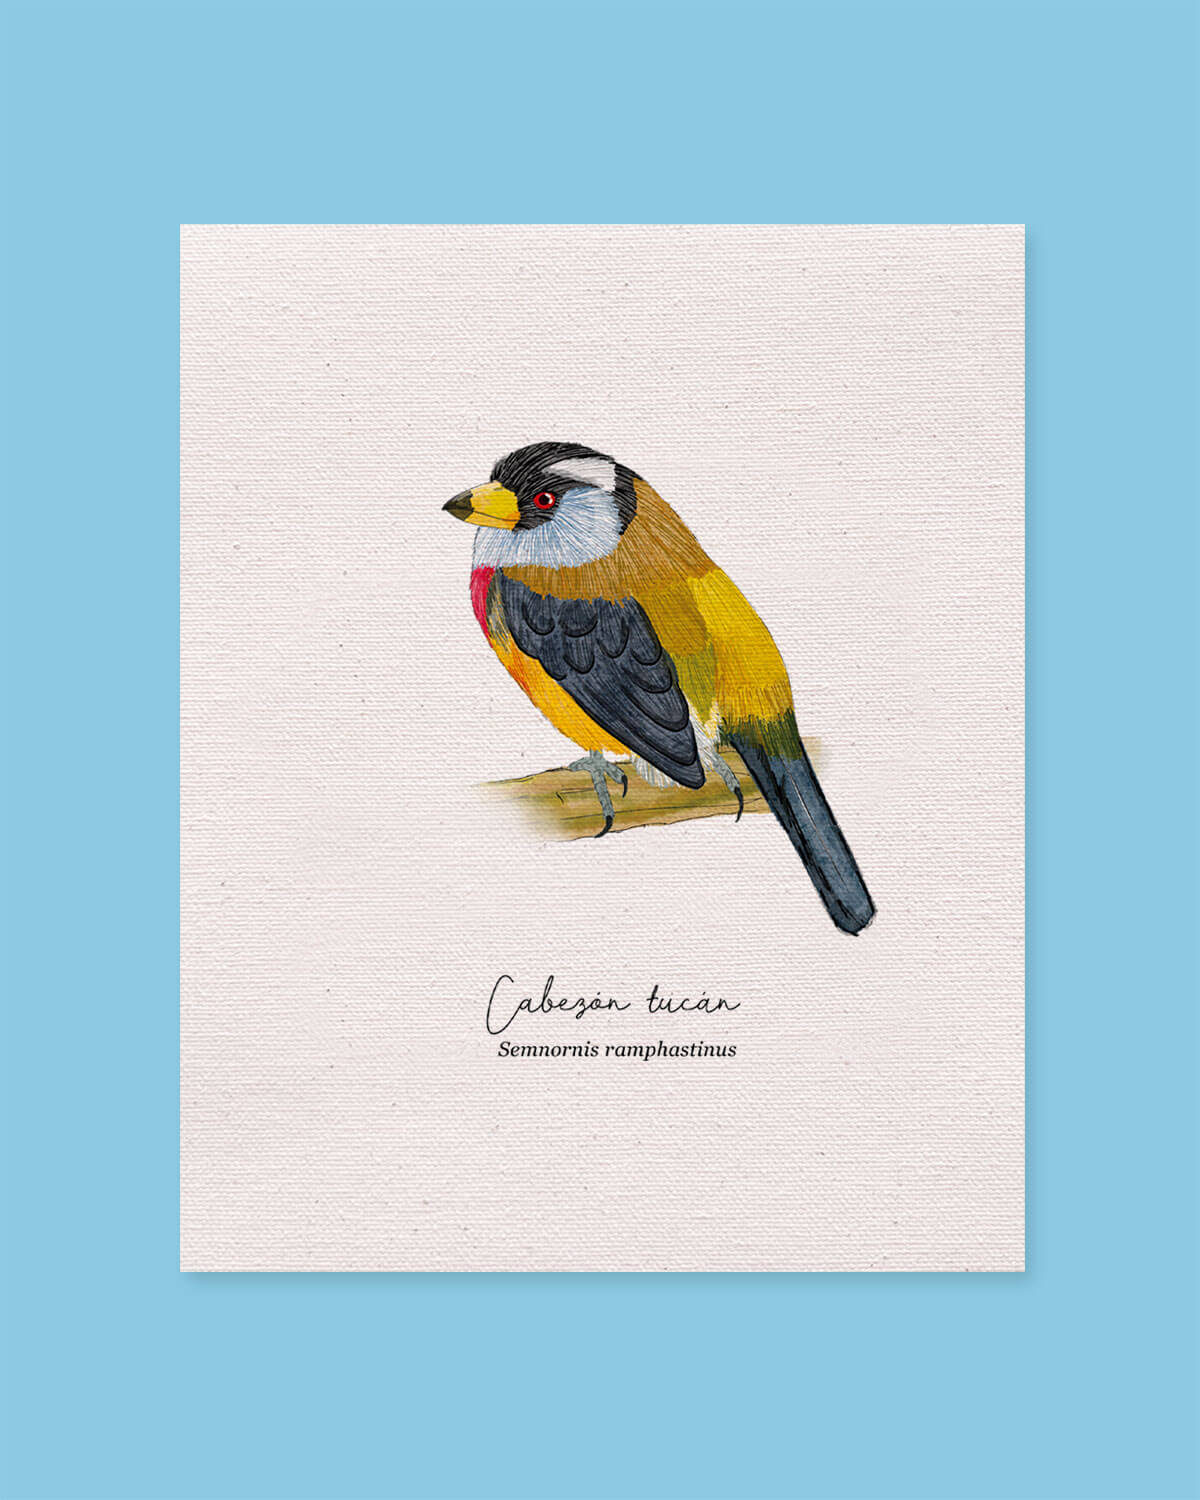 Cabezon Tucan ave colombia aves de colombia cuadros regalos souvenirs colombianos Colombia arte artesanías mapas postales decoracion